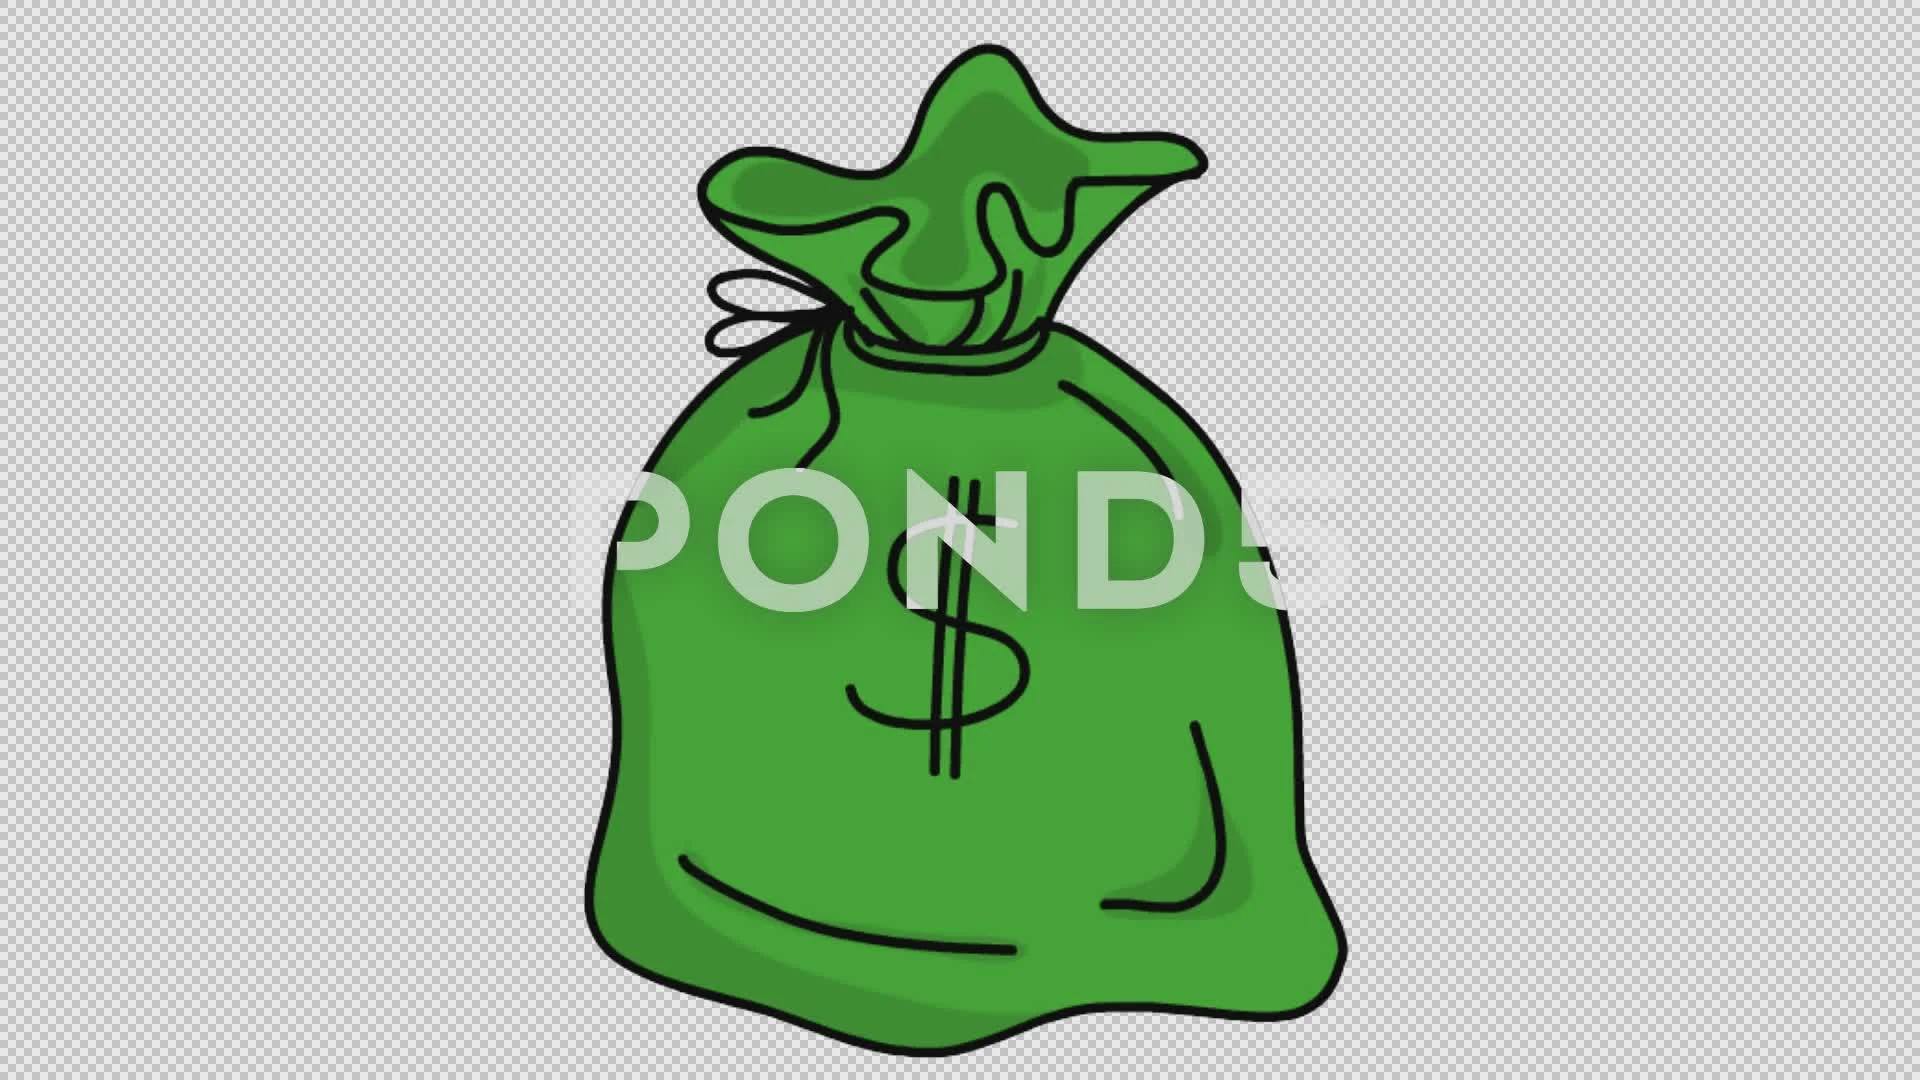 Money Bag man drawing free image download